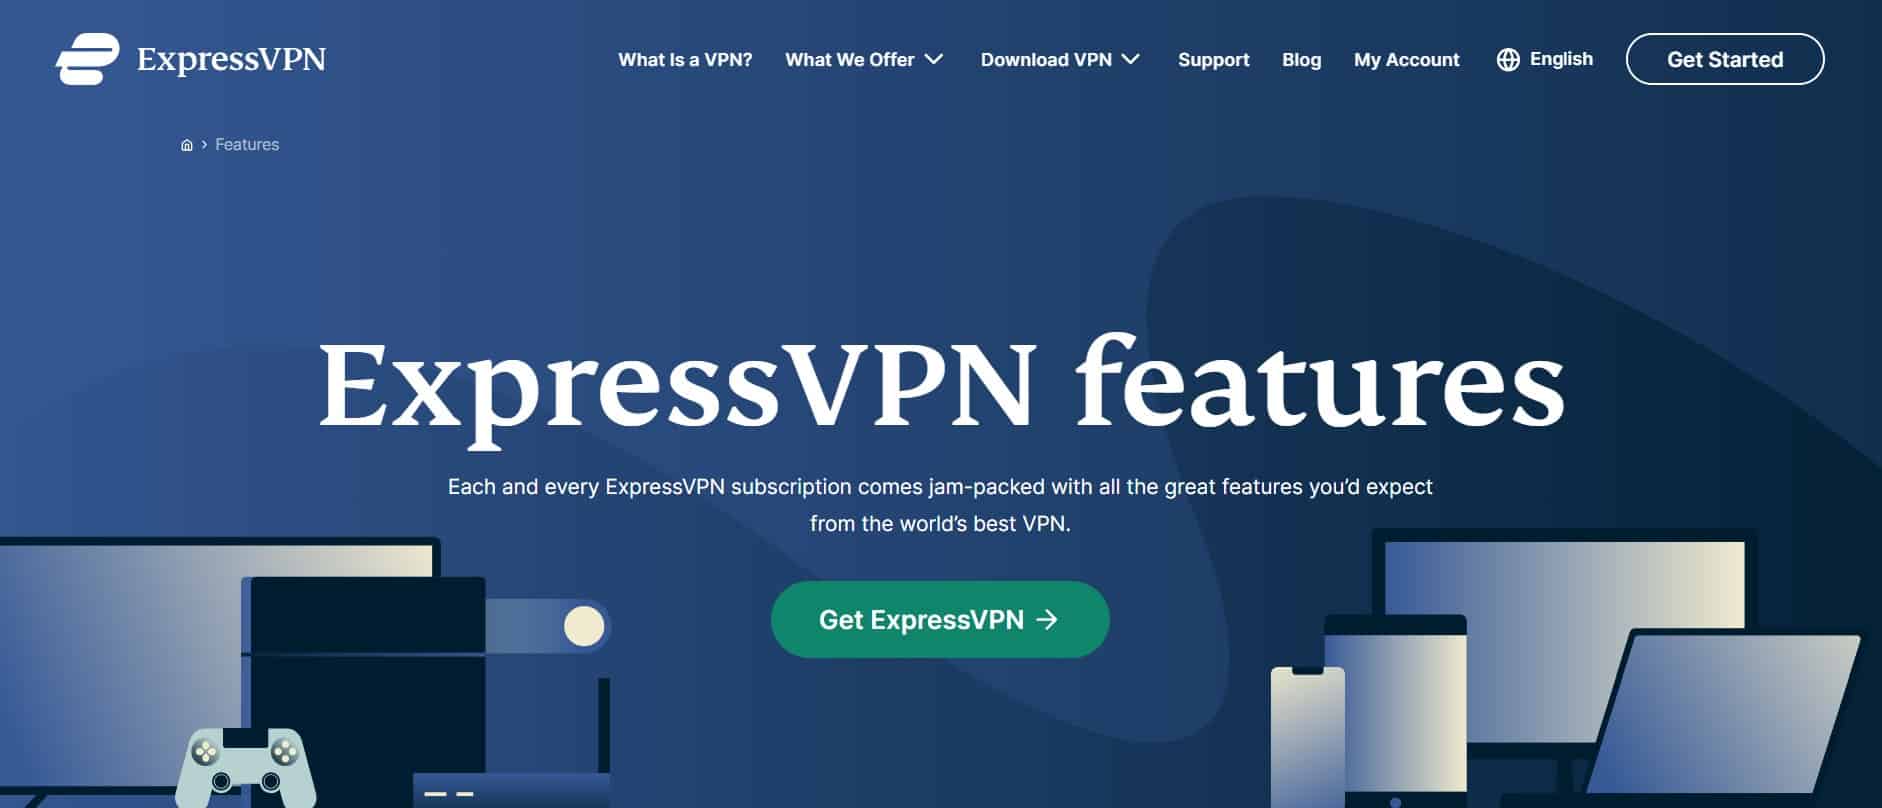 Features of ExpressVPN